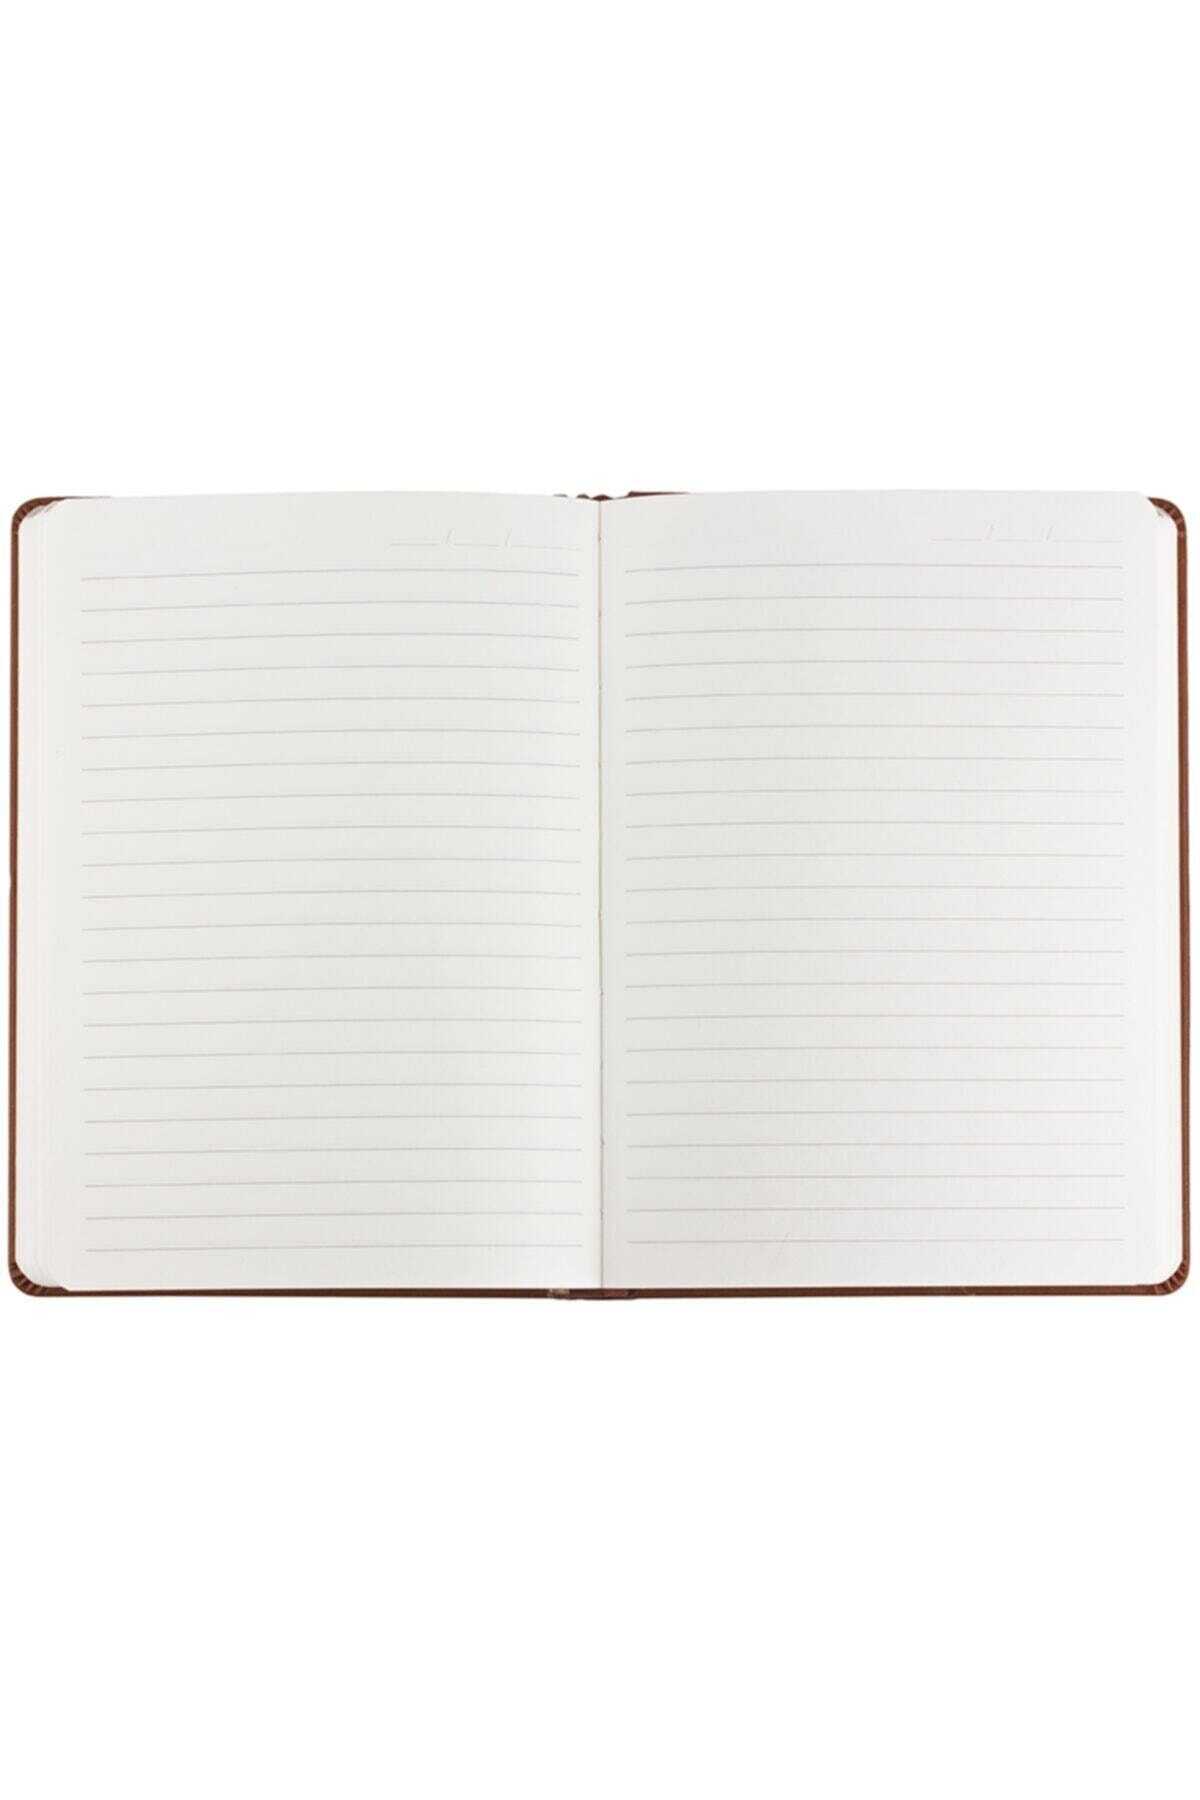 دفترچه یادداشت 14x20 سانتی طرح دار سرمه ای برند Victoria's Journals